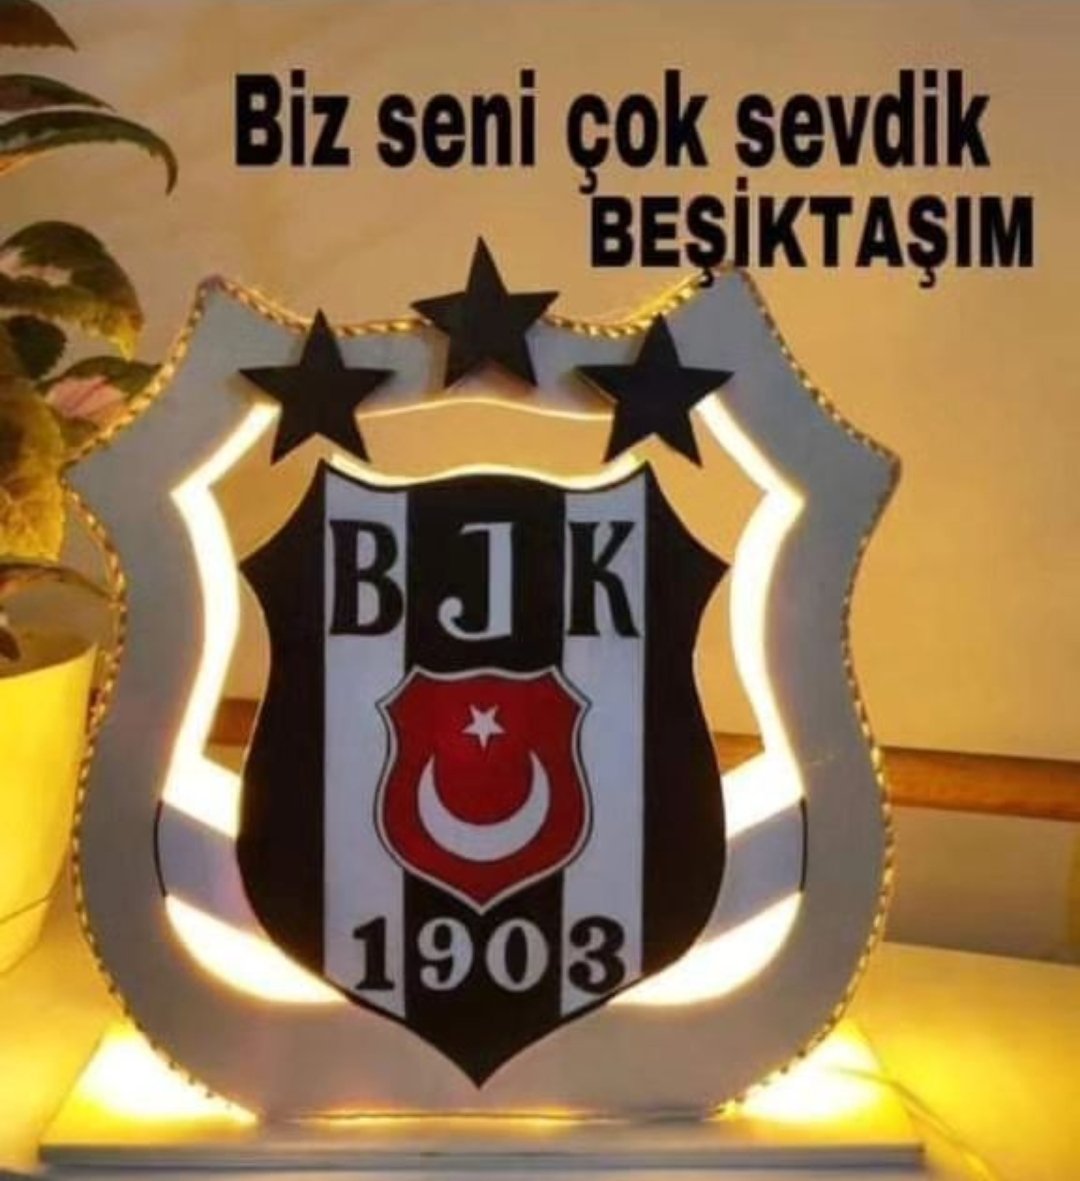 Asaletin yeter Beşiktaş 🧿🦅 💥19:03💥